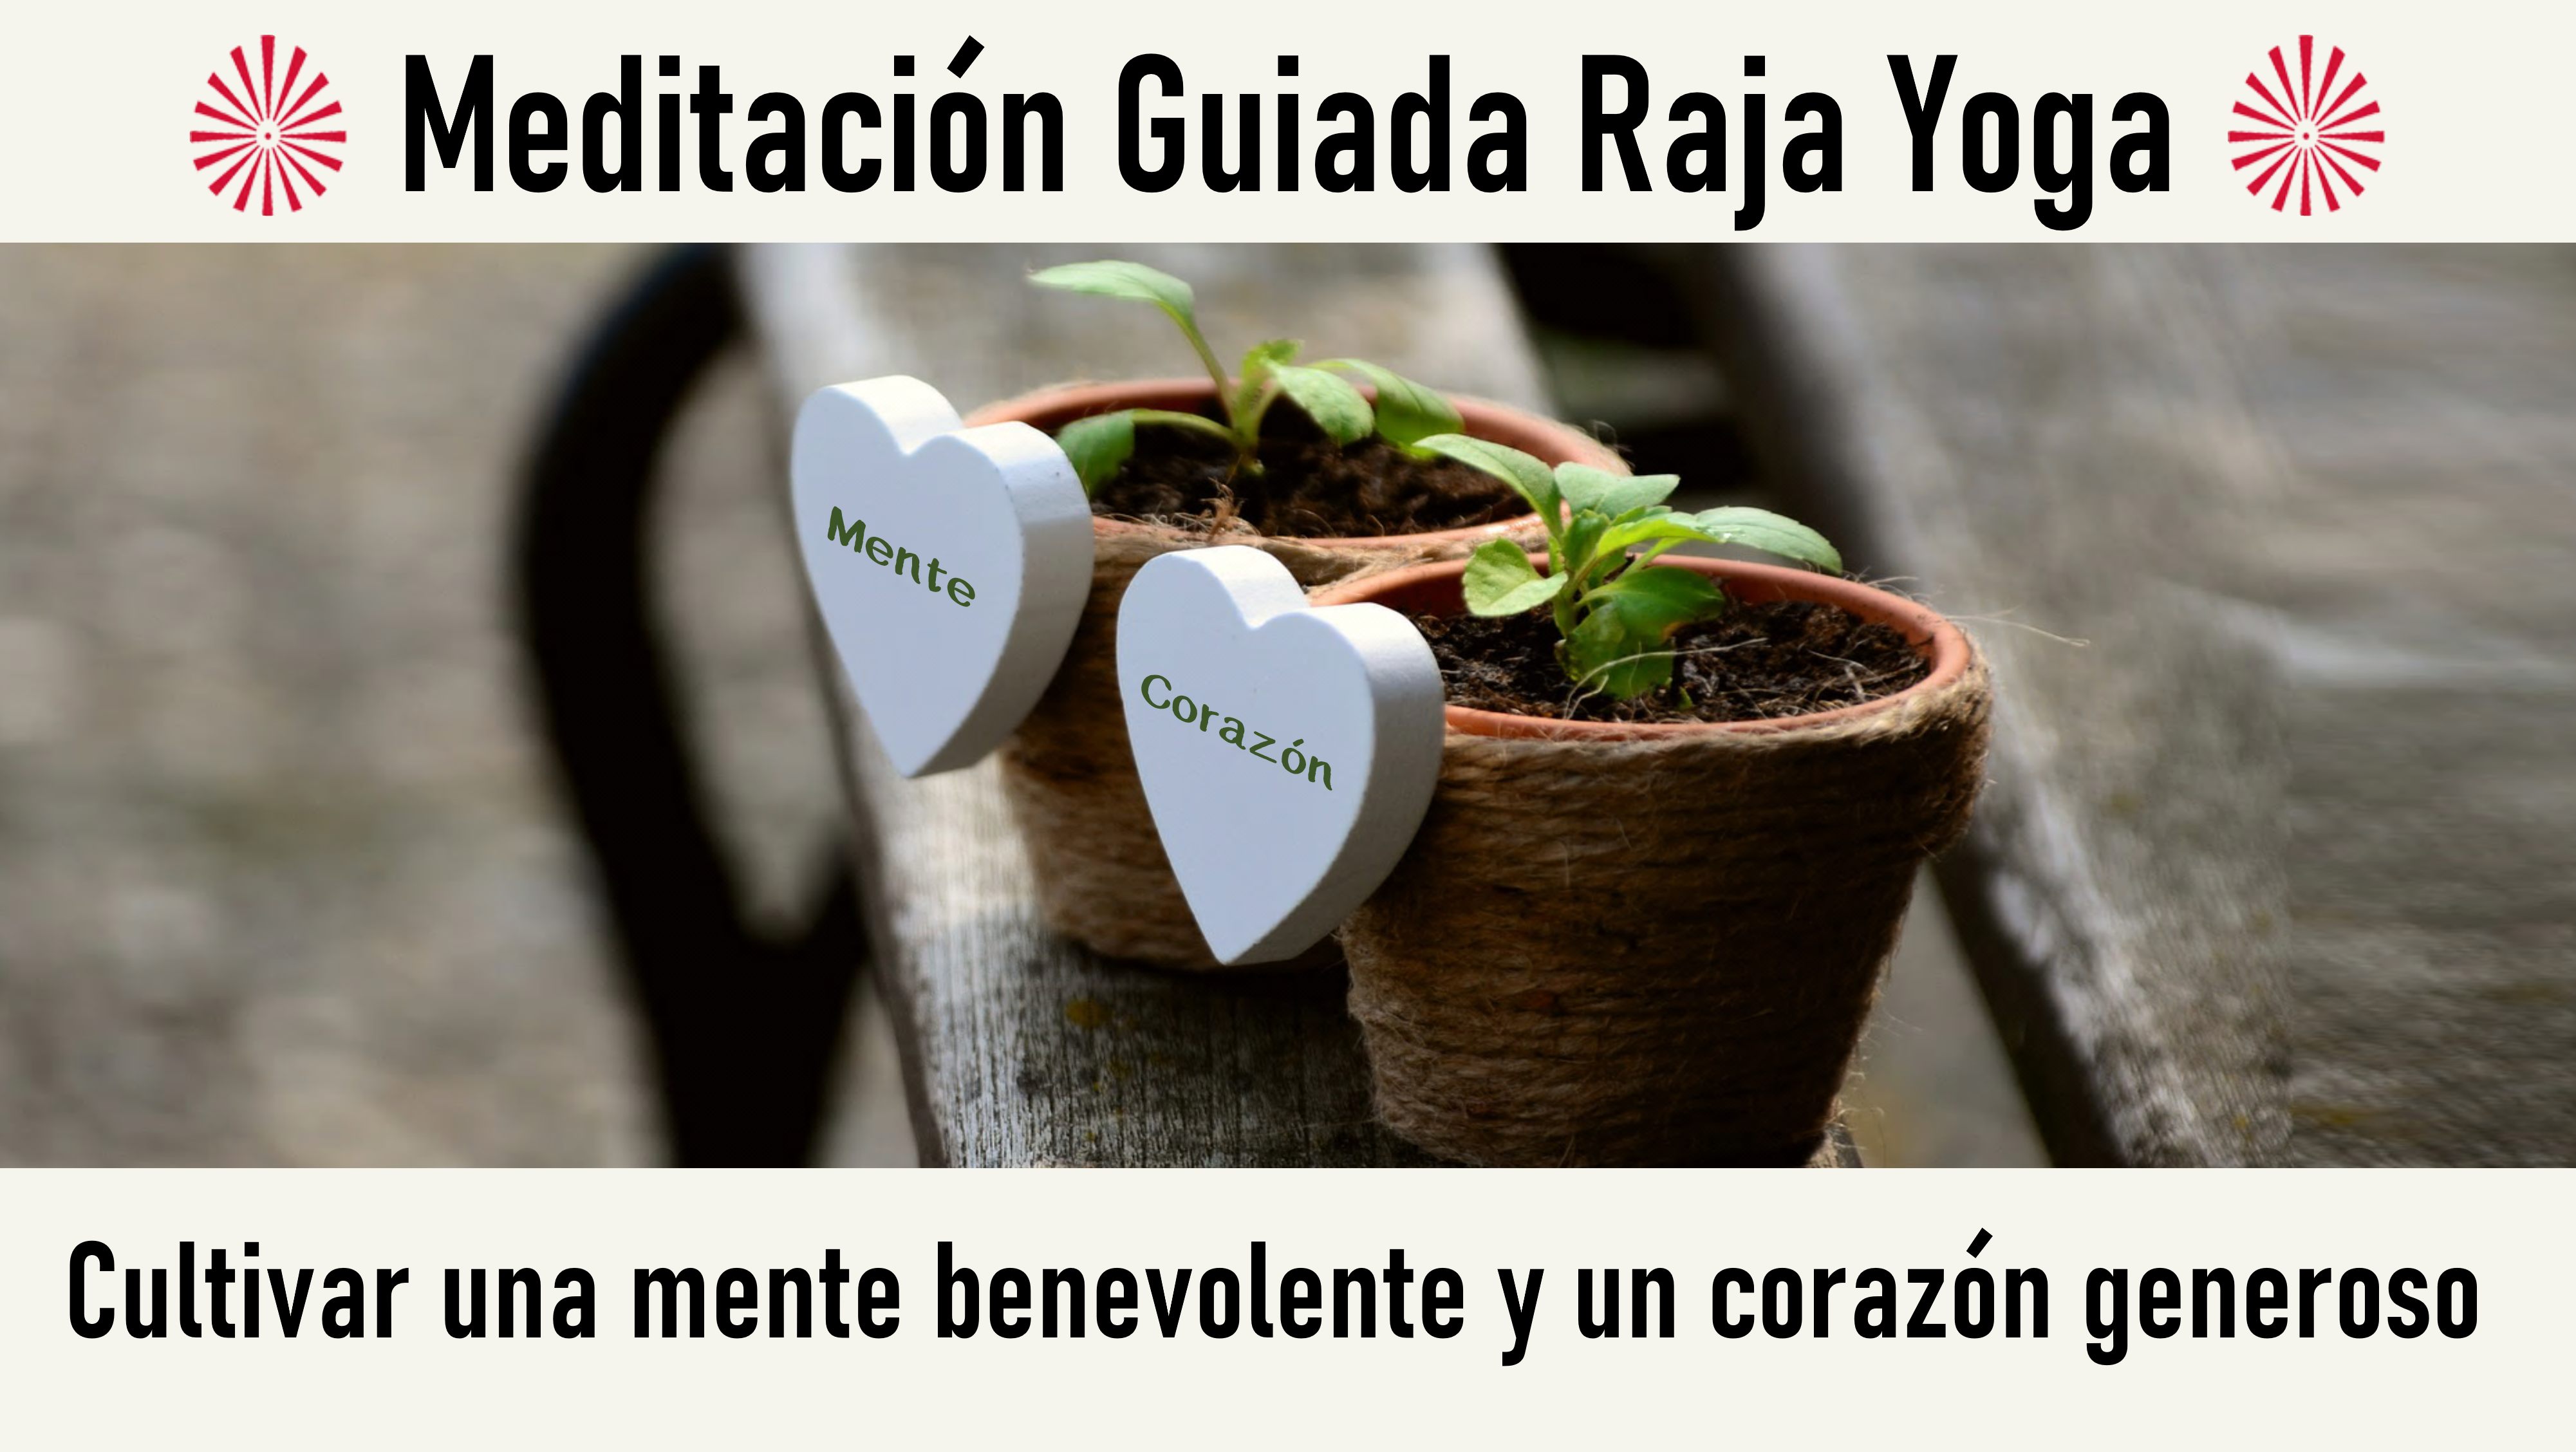 Meditación Raja Yoga: Cultivar una mente benevolente y un corazón generoso (11 Junio 2020) On-line desde Mallorca